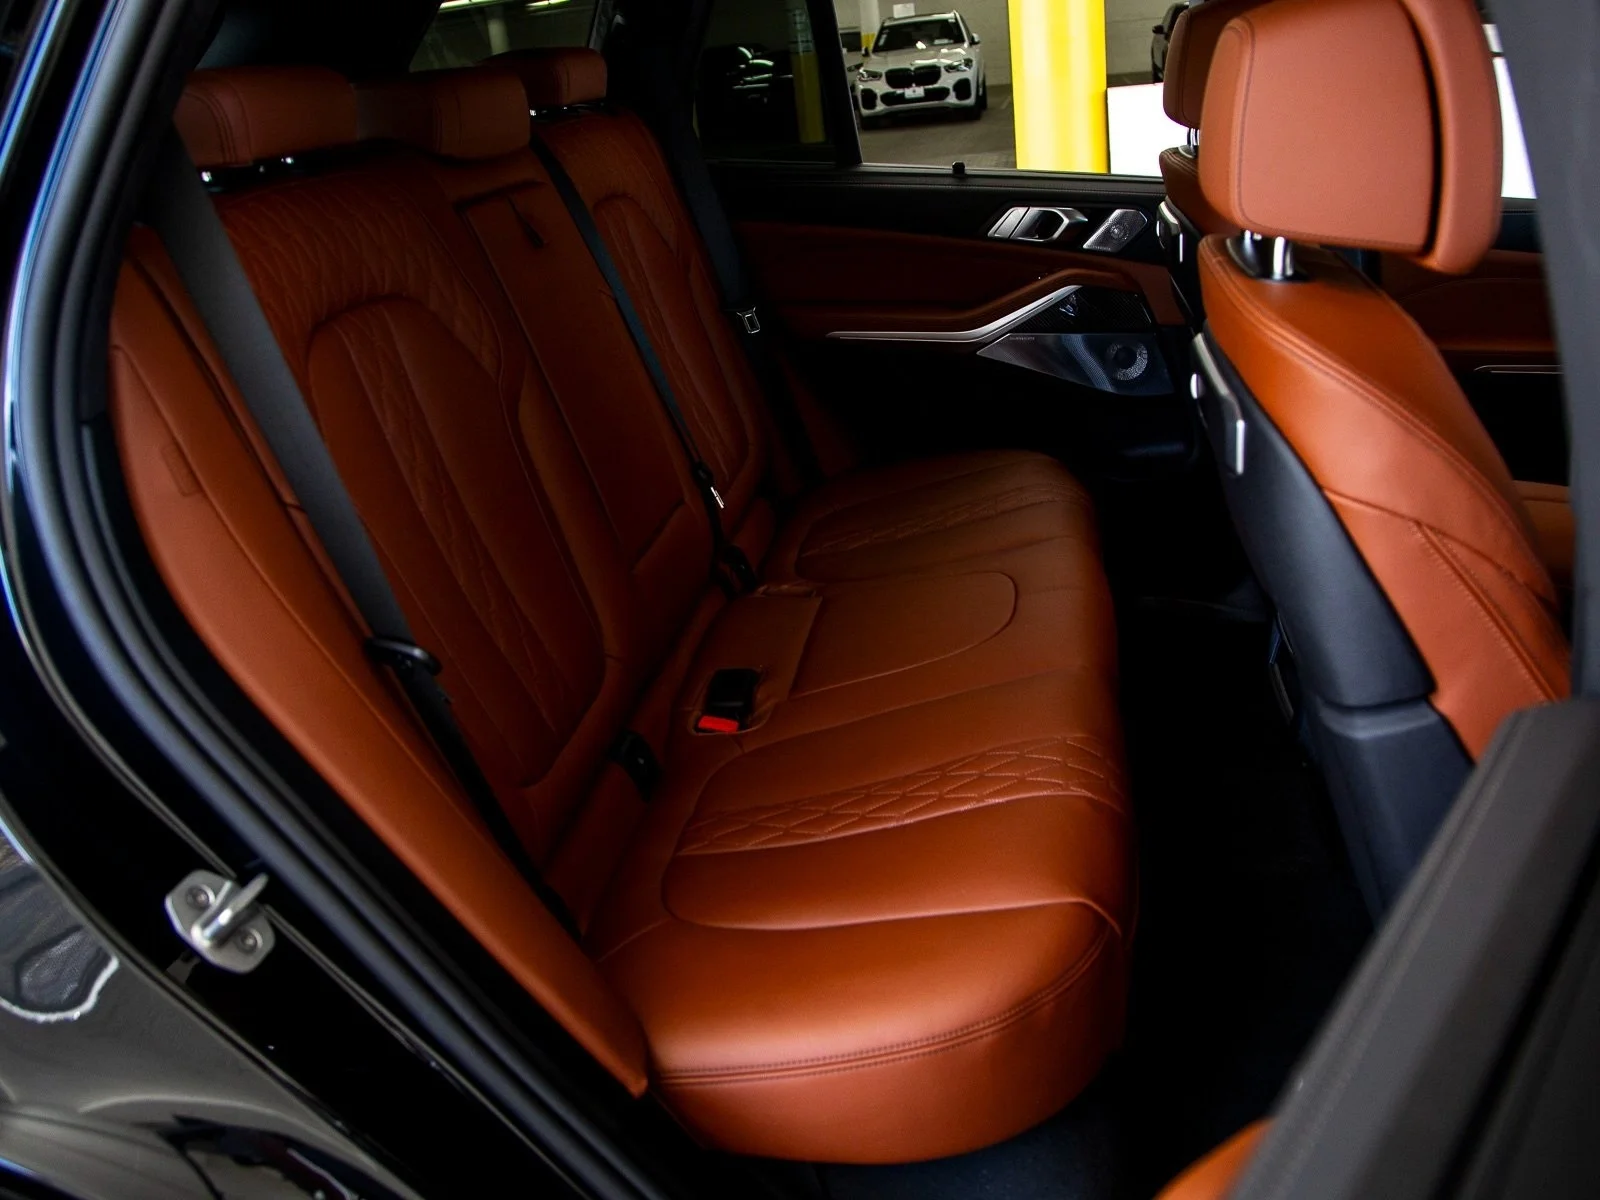 Tải ngay hình ảnh chi của nội thất xe BMW X5 3